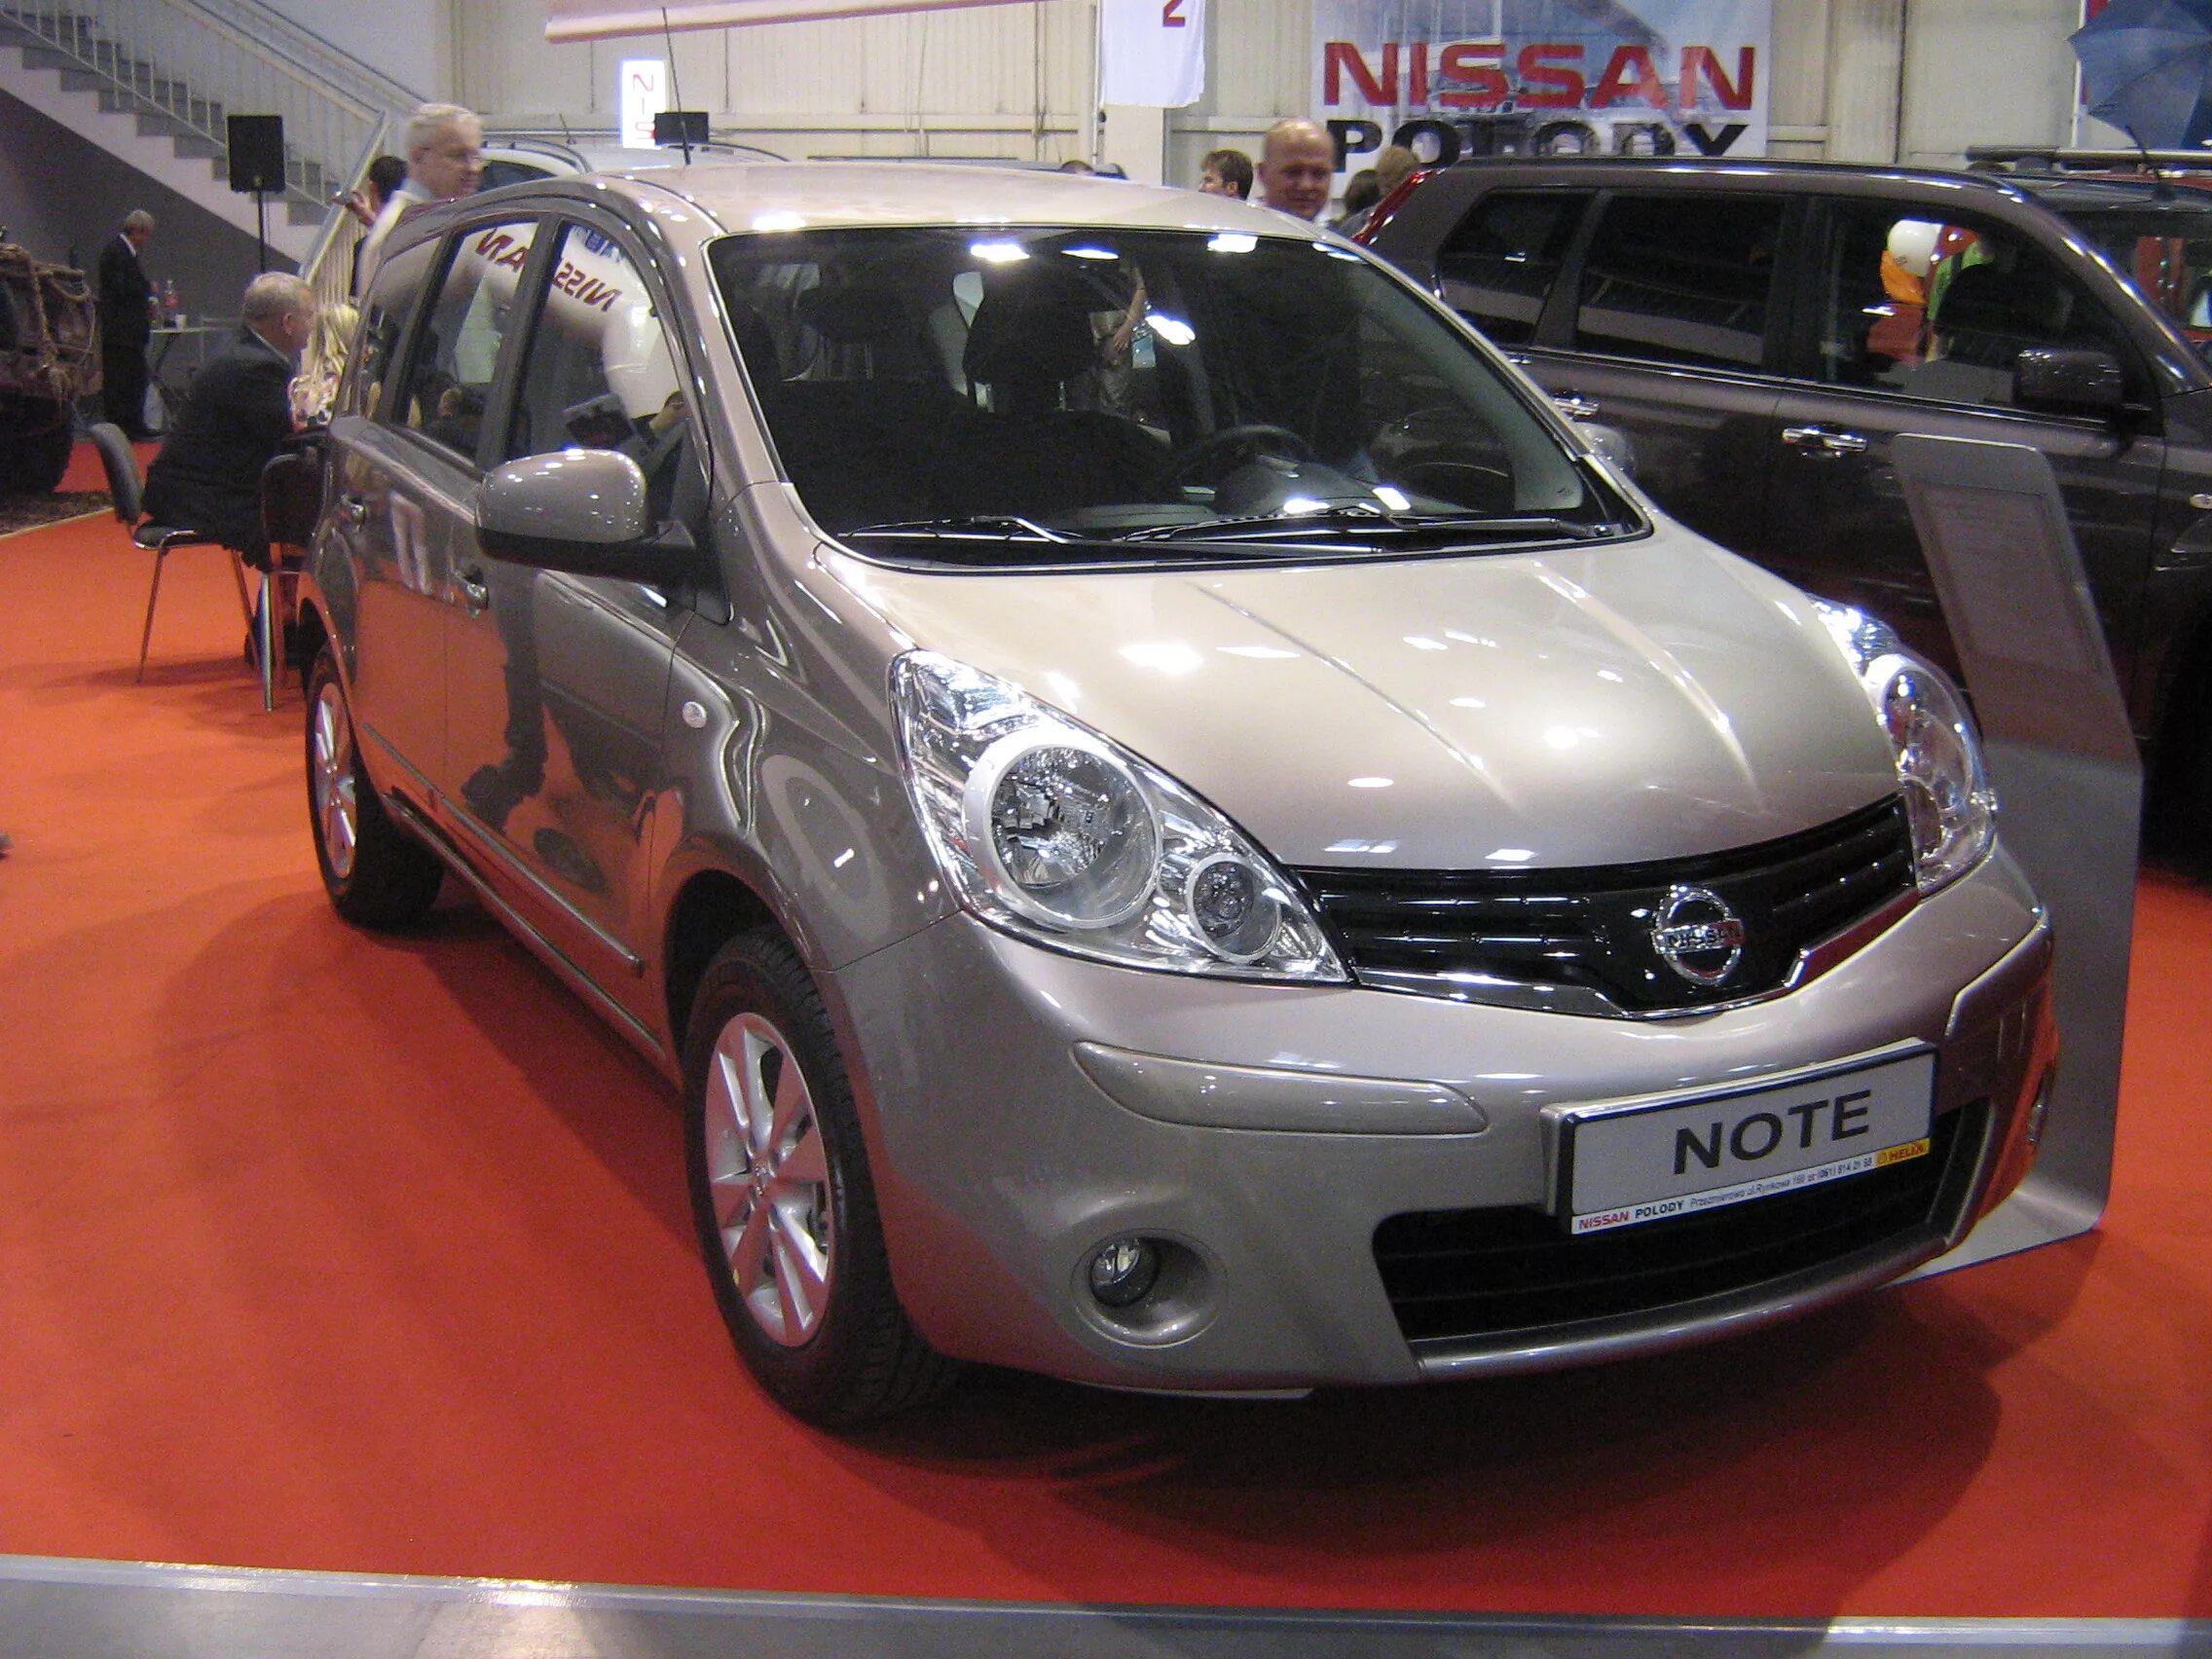 Nissan Note 2011 1.6. Nissan Note 2009. Nissan Note 1.6 2010. Nissan Note e11 2010. Ниссан нот 4